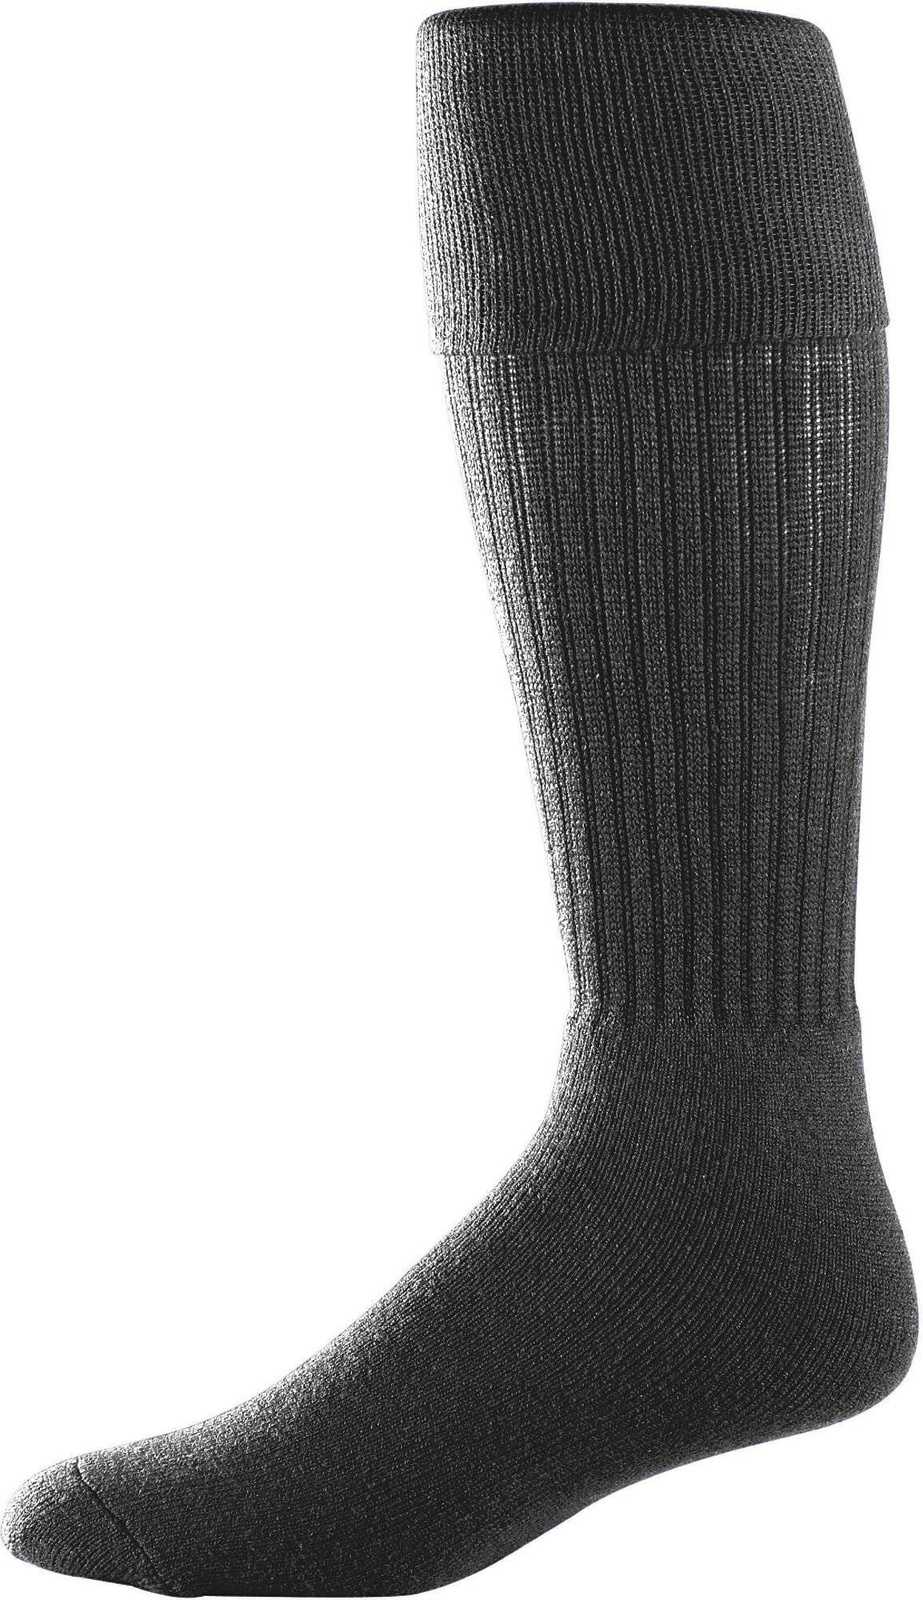 Augusta 6031 Soccer Knee High Socks - Black - HIT a Double